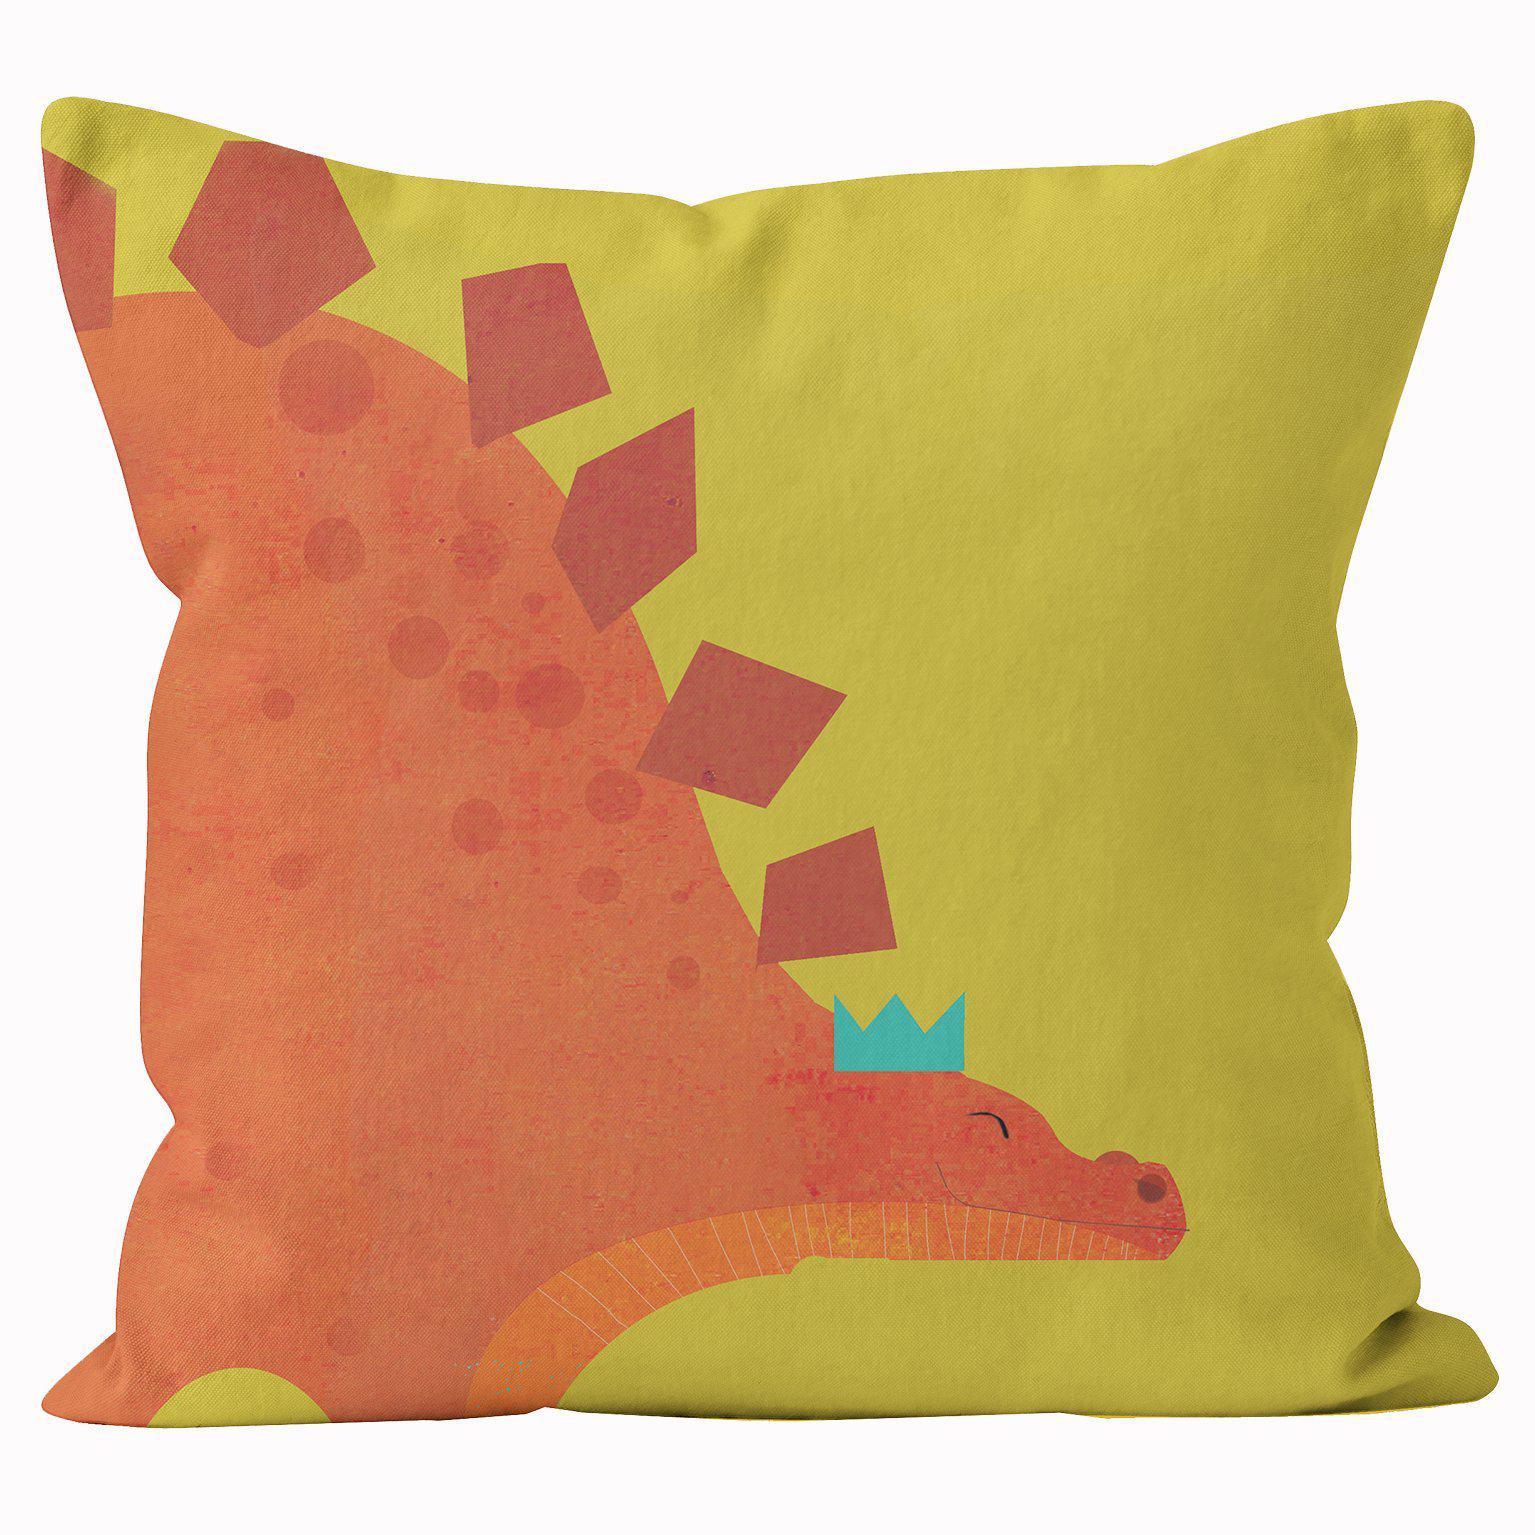 Stegasaurus - Kali Stileman Cushion - Handmade Cushions UK - WeLoveCushions